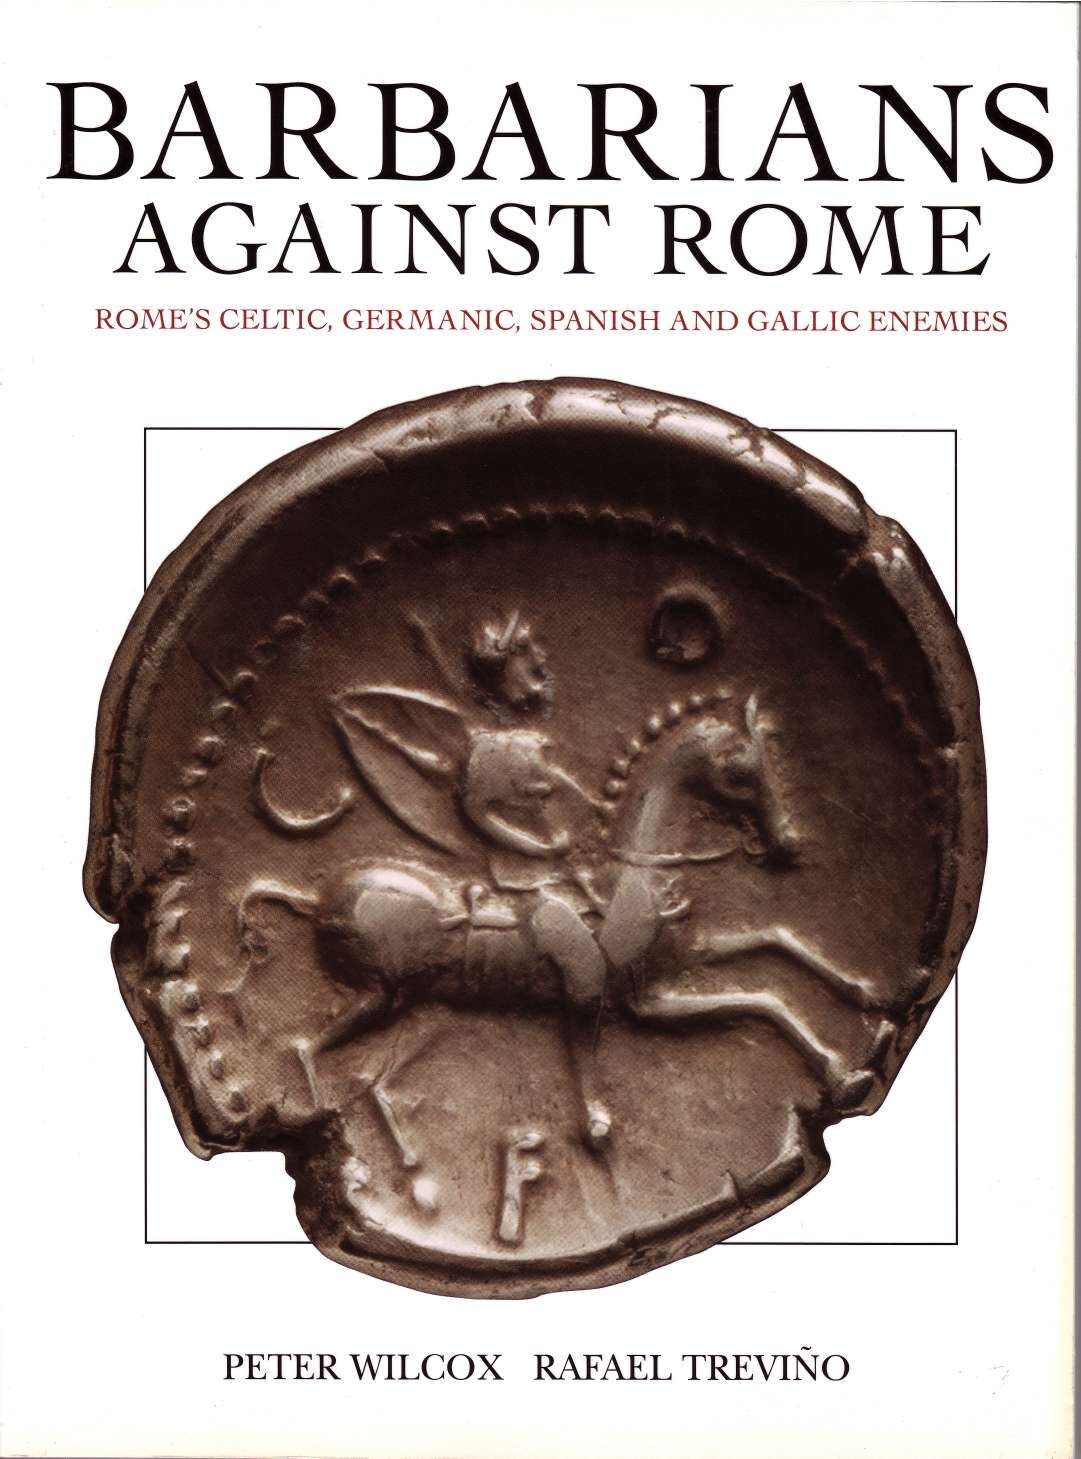 Barabarians Against Rome